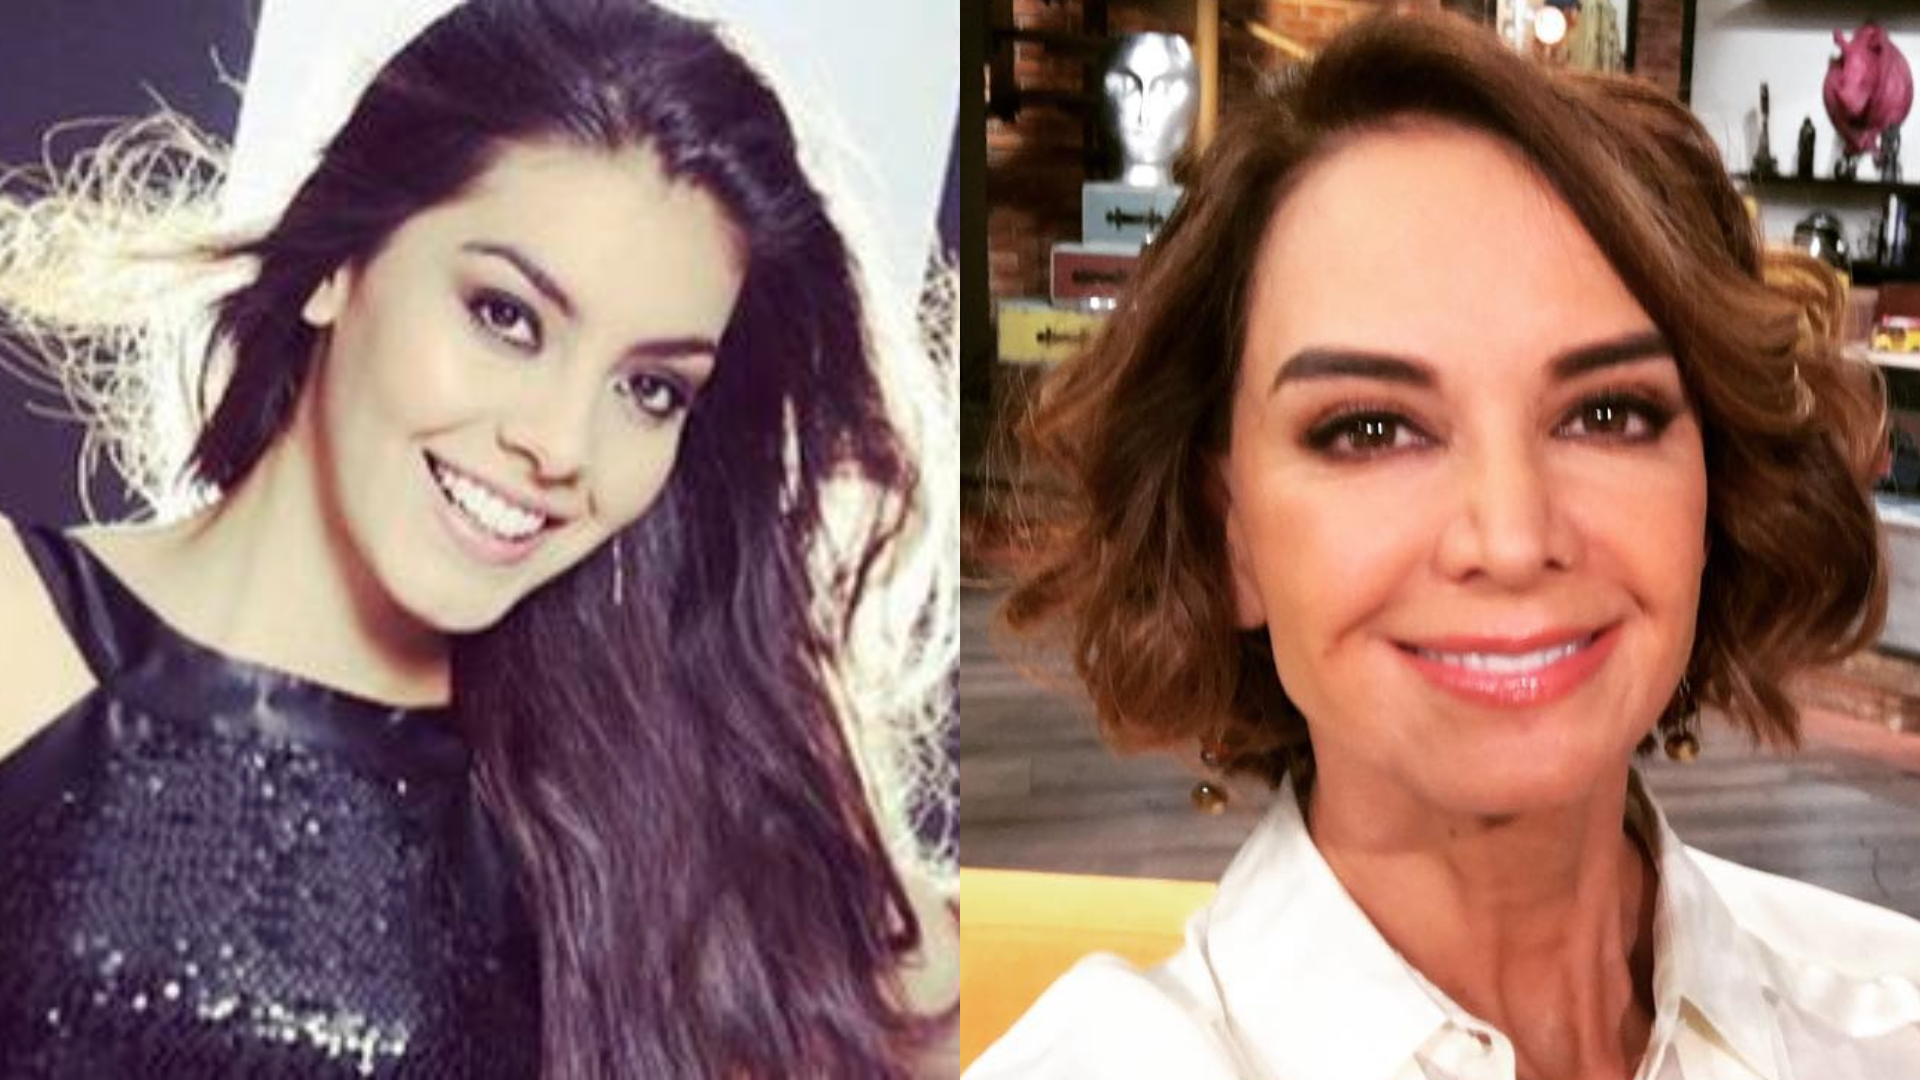 Diana Leal fue Miss Puebla en el año 2016, pero fue destituida por Lupita Jones por "falta de compromiso" (Foto: Facebook Vamos Diana Leal / Instagram @lupjones)